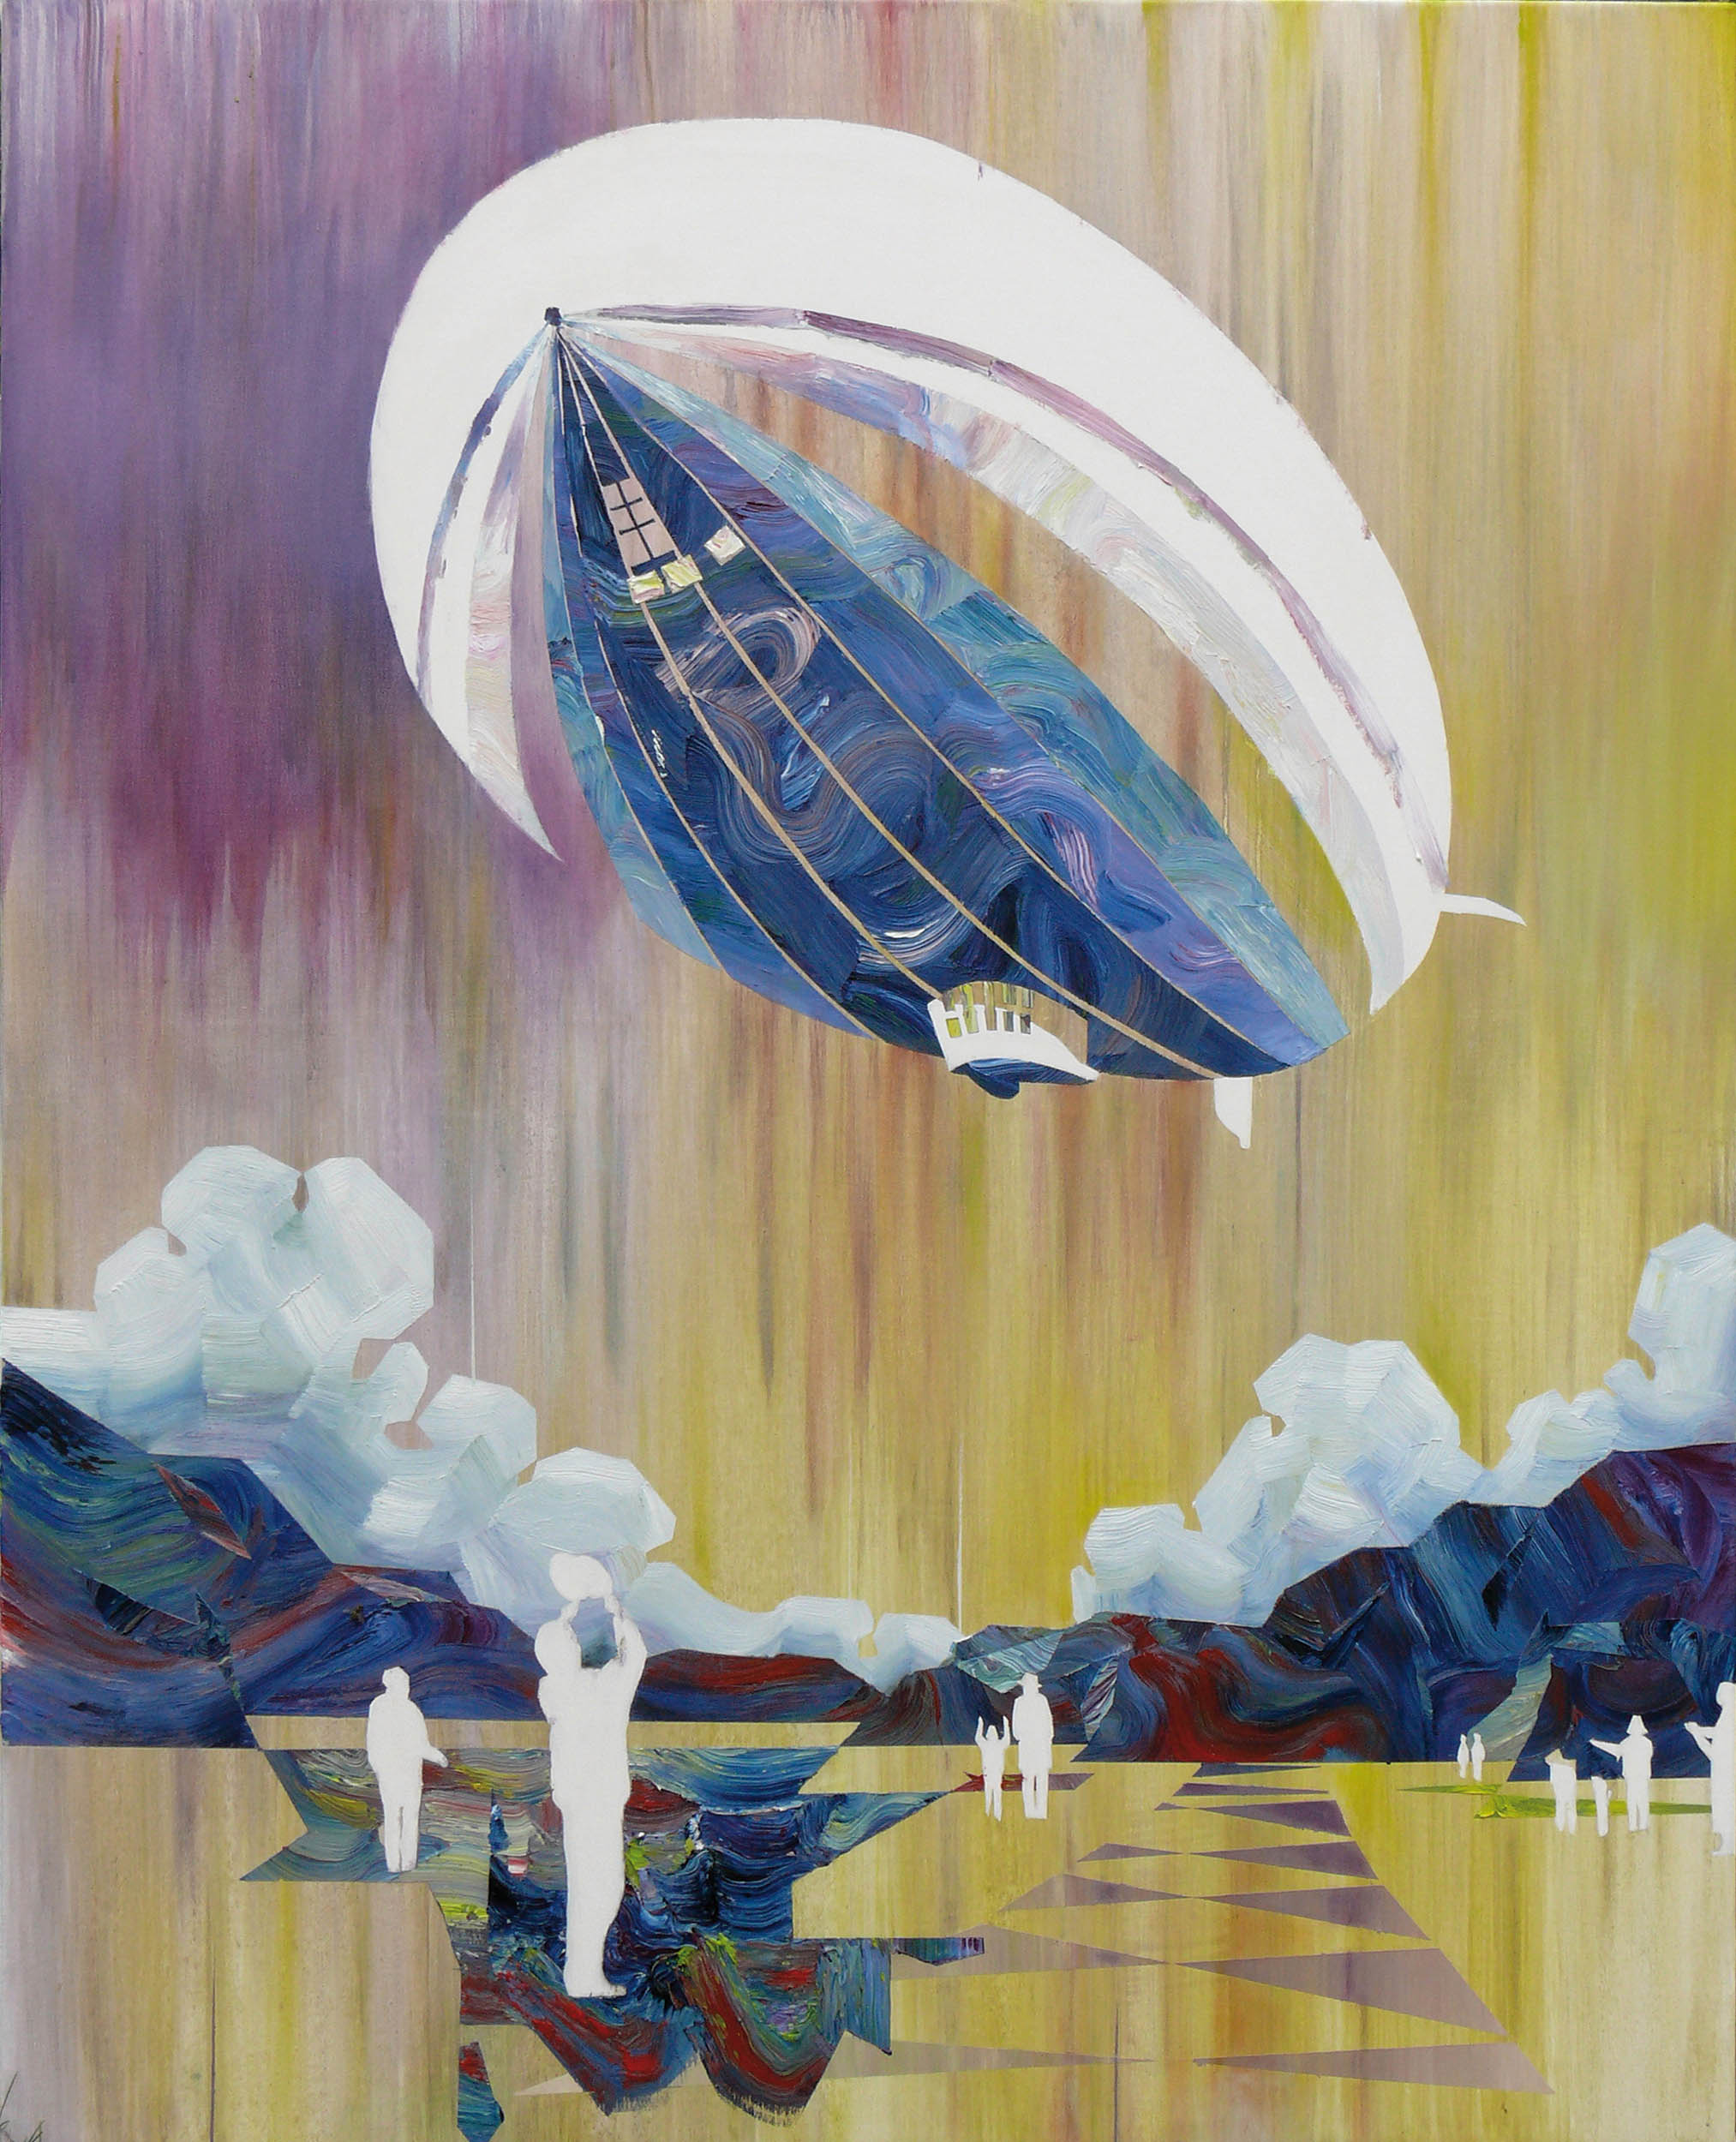   Zeppelin   oil on canvas 100 x 80 cm,&nbsp;2010 